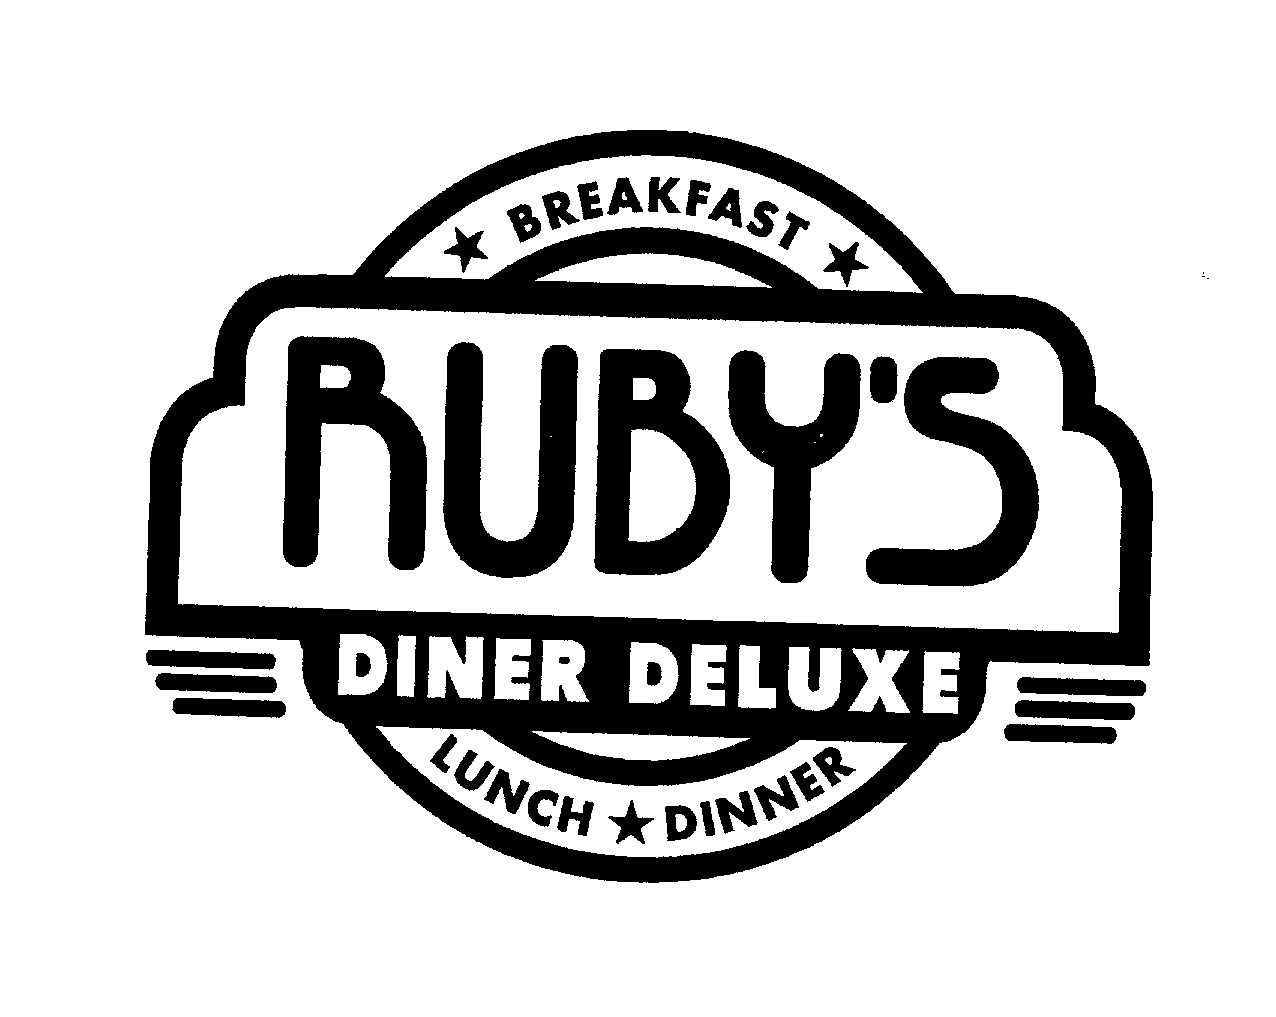  RUBY'S DINER DELUXE BREAKFAST LUNCH DINNER